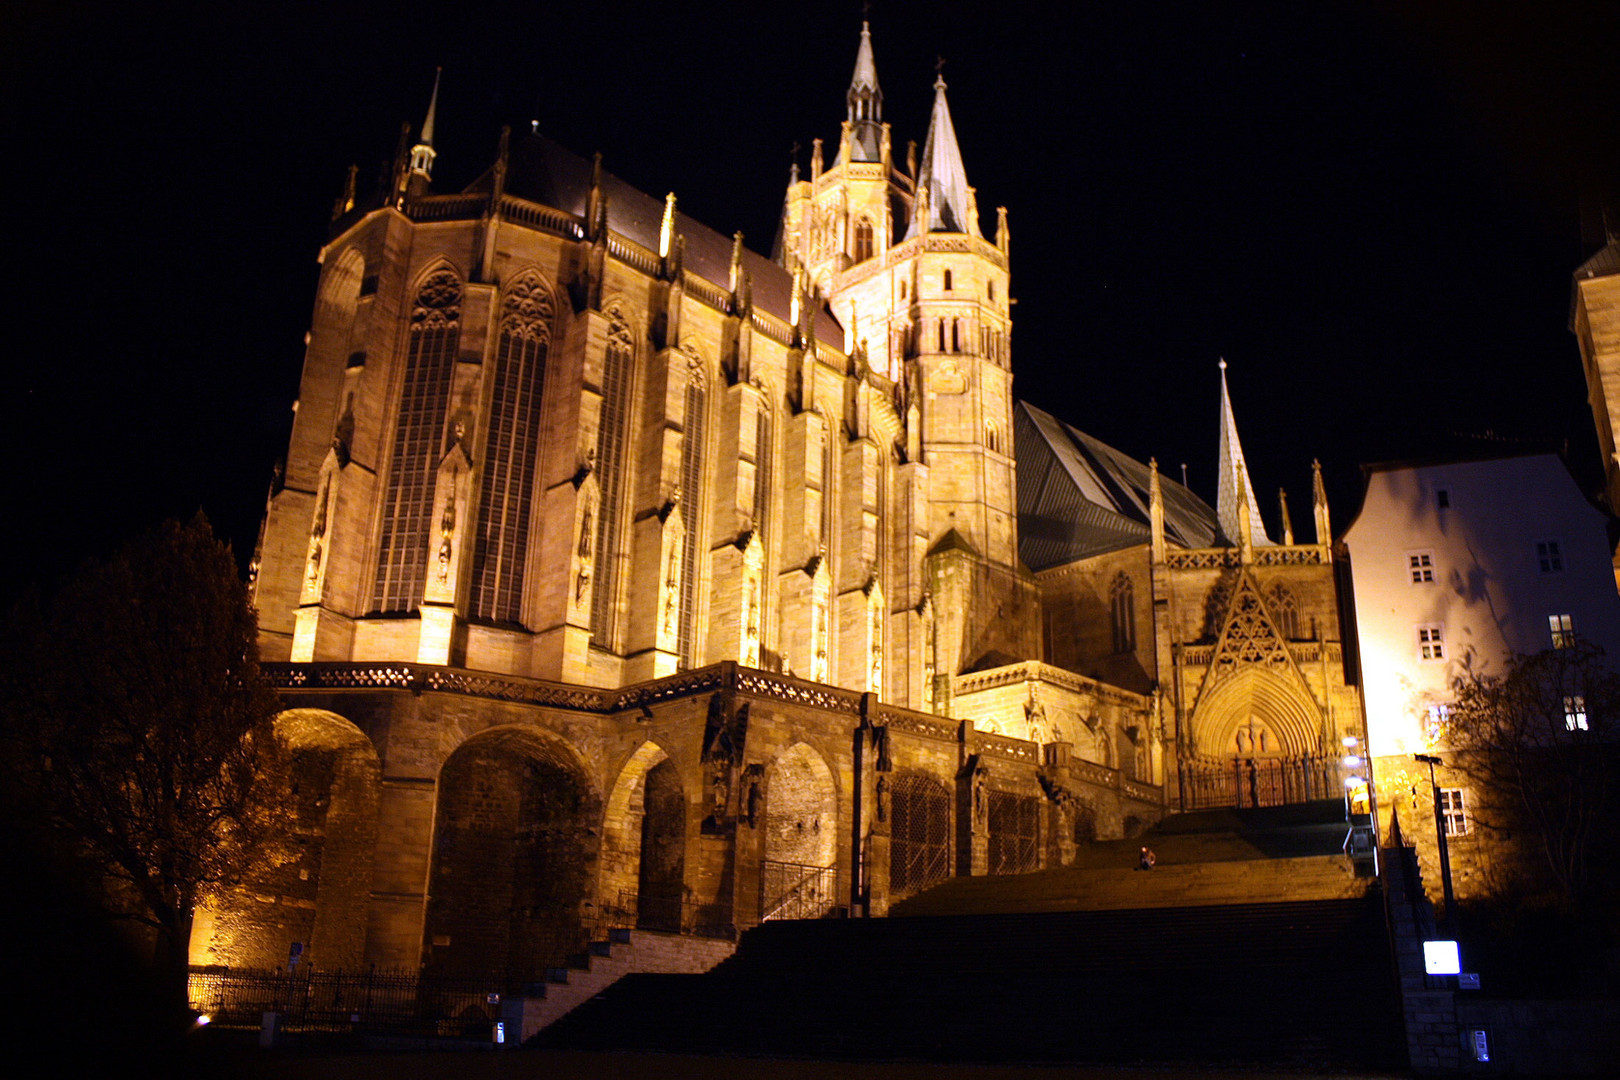 der Erfurter Dom bei Nacht